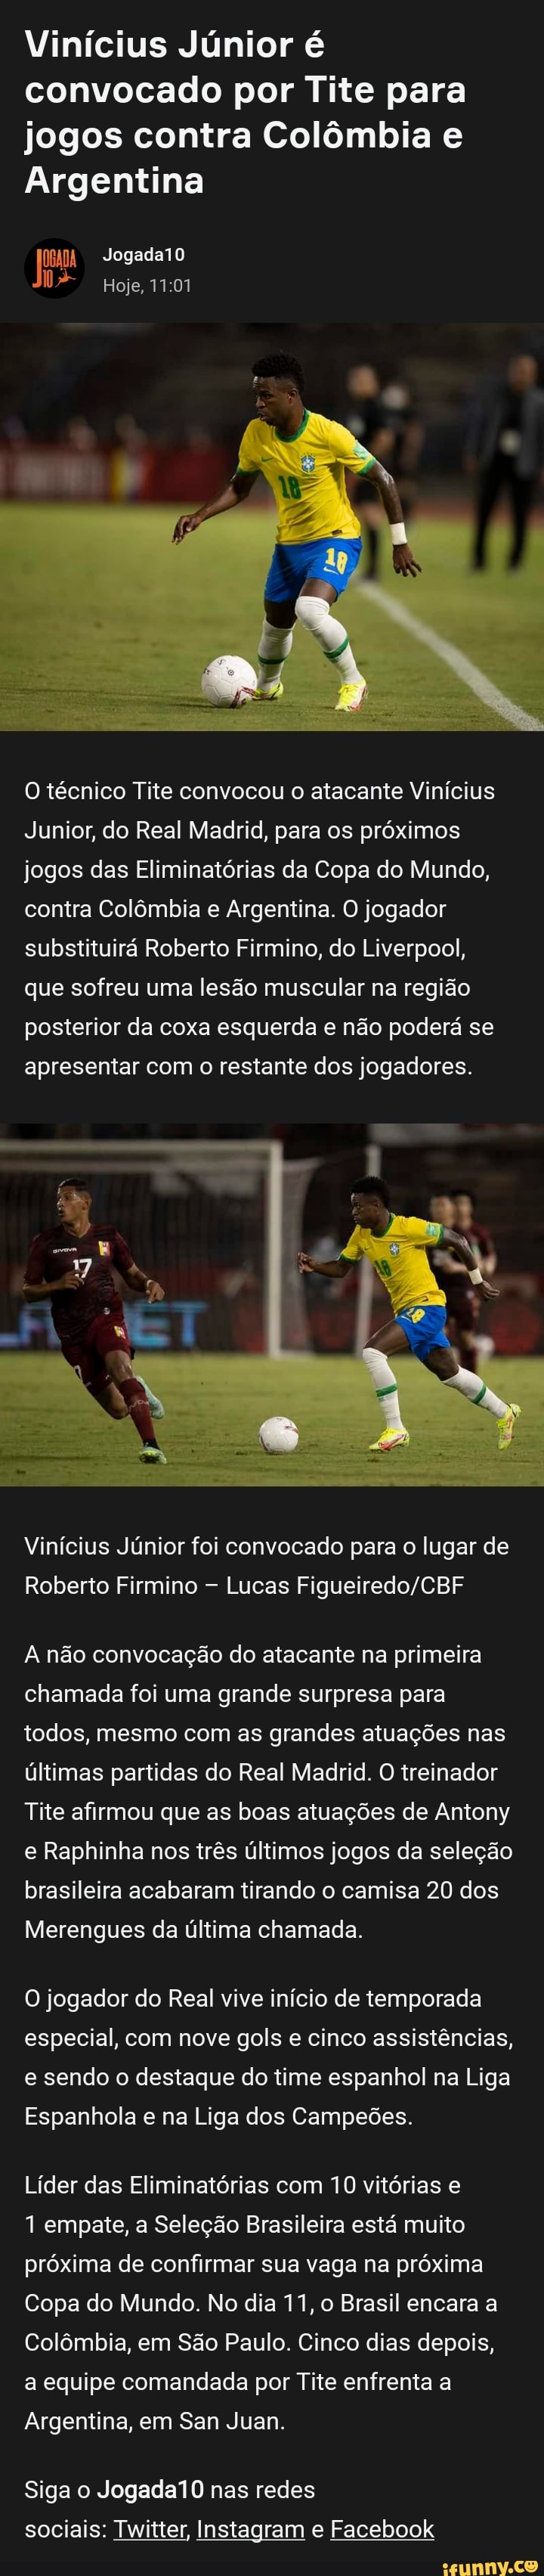 Vinícius Jr. na seleção brasileira: jogos, gols, convocações e